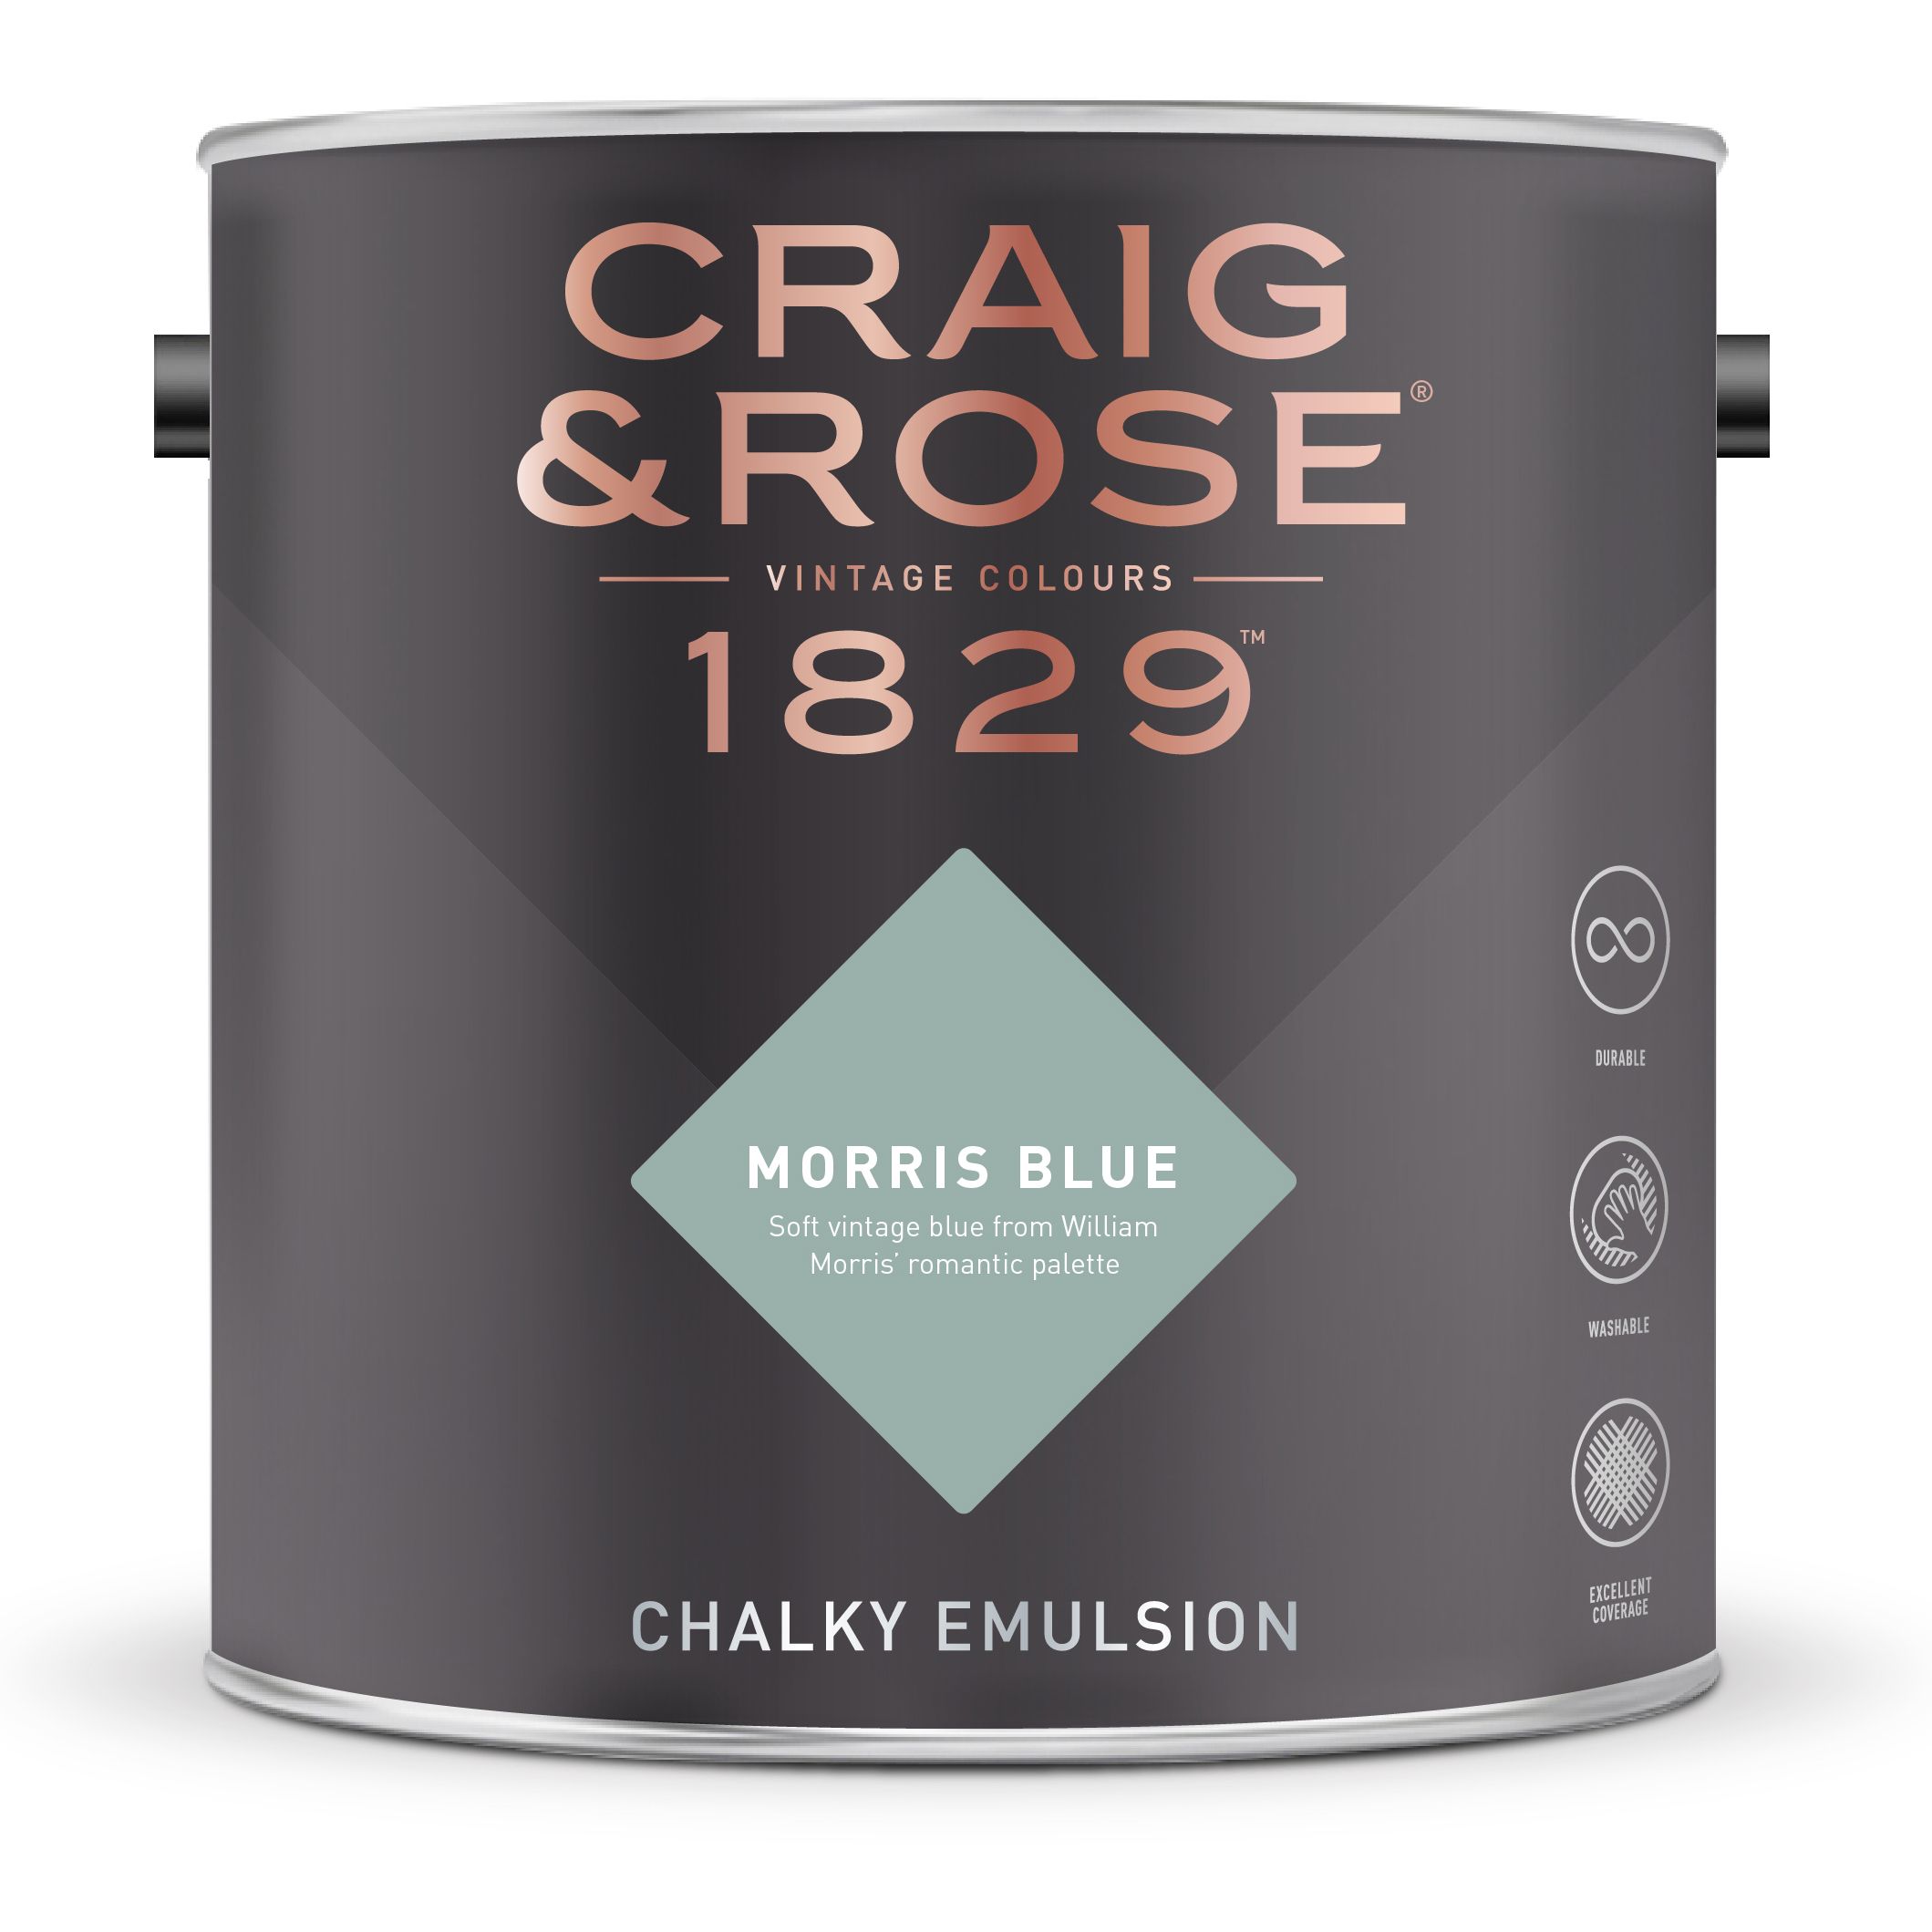 Craig & Rose 1829 Morris Blue  Chalky Emulsion paint, 2.5L